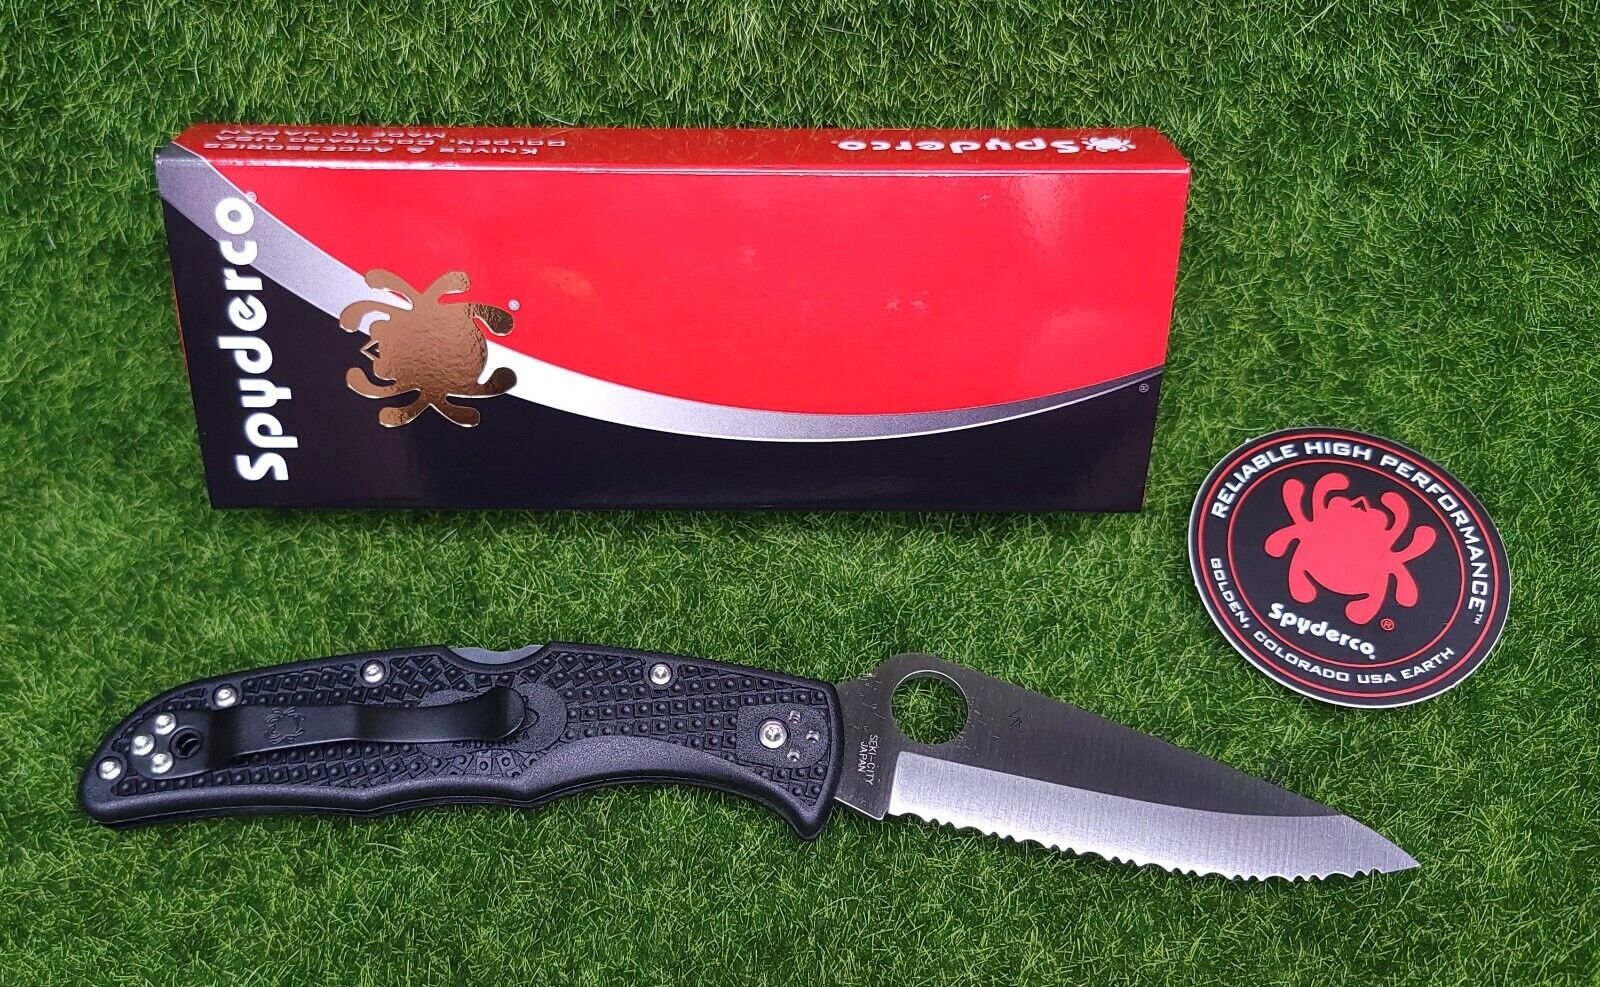 Spyderco Endura 4 Lockback Knife Black FRN VG-10 Stainless Pocket Knife - C10SBK